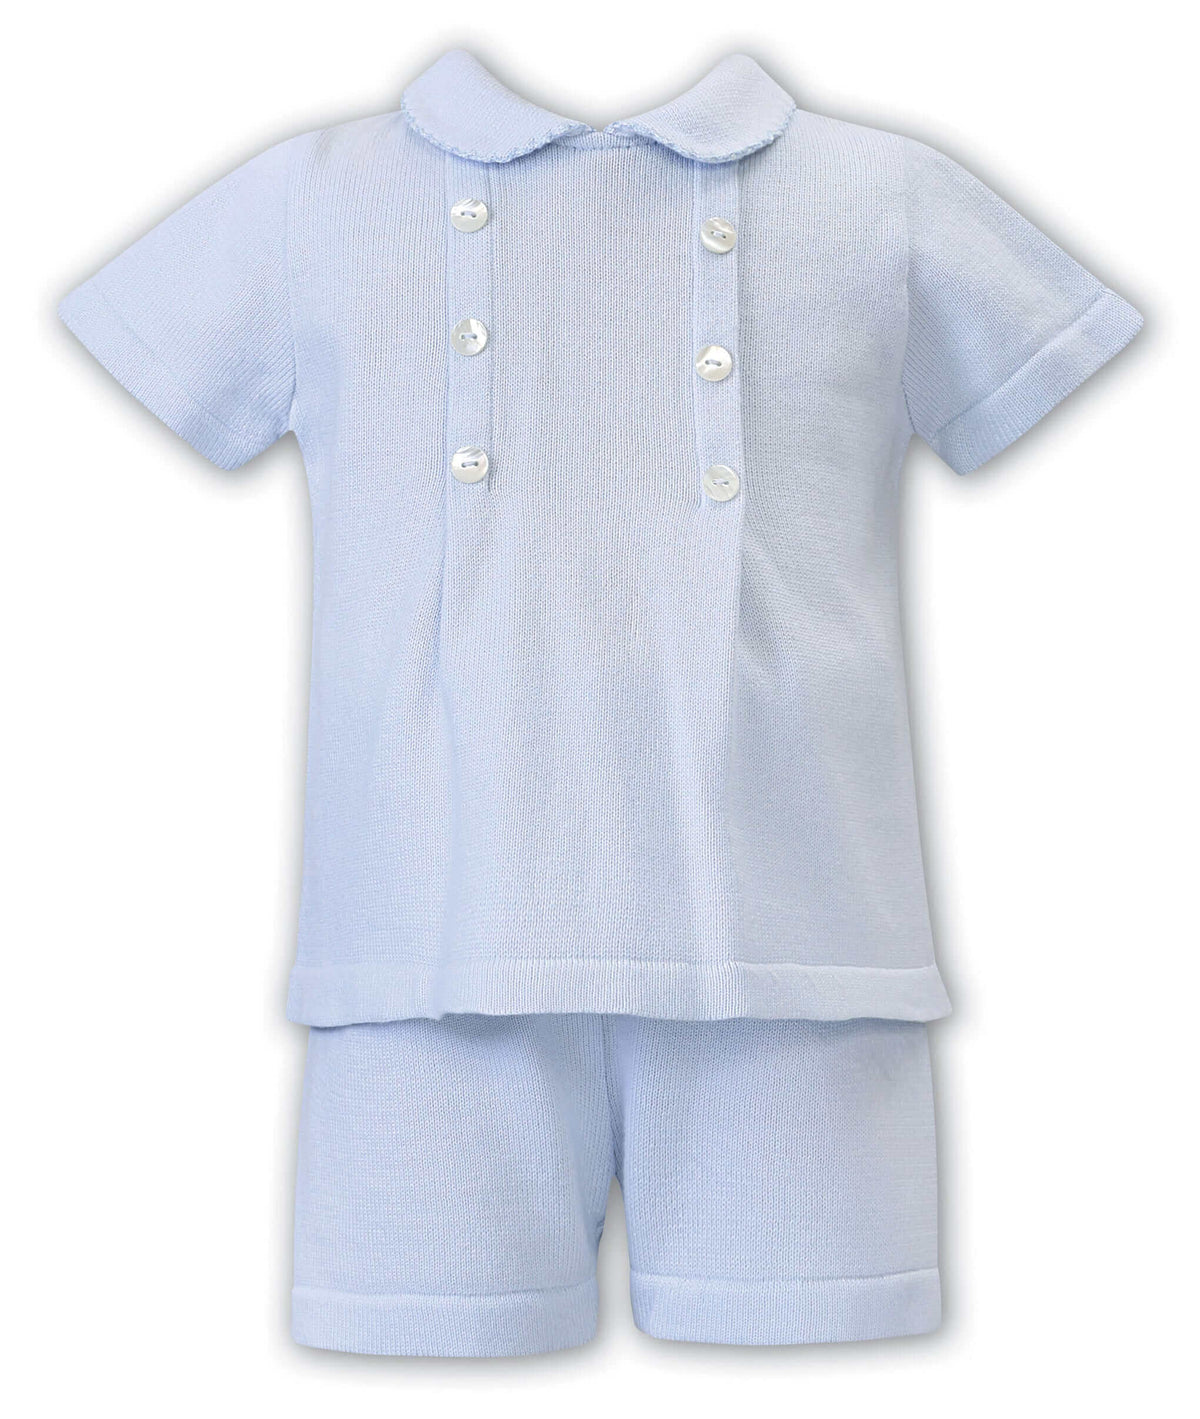 Sarah Louise Baby Boys Blue Cotton Knit 2 Piece Short Set